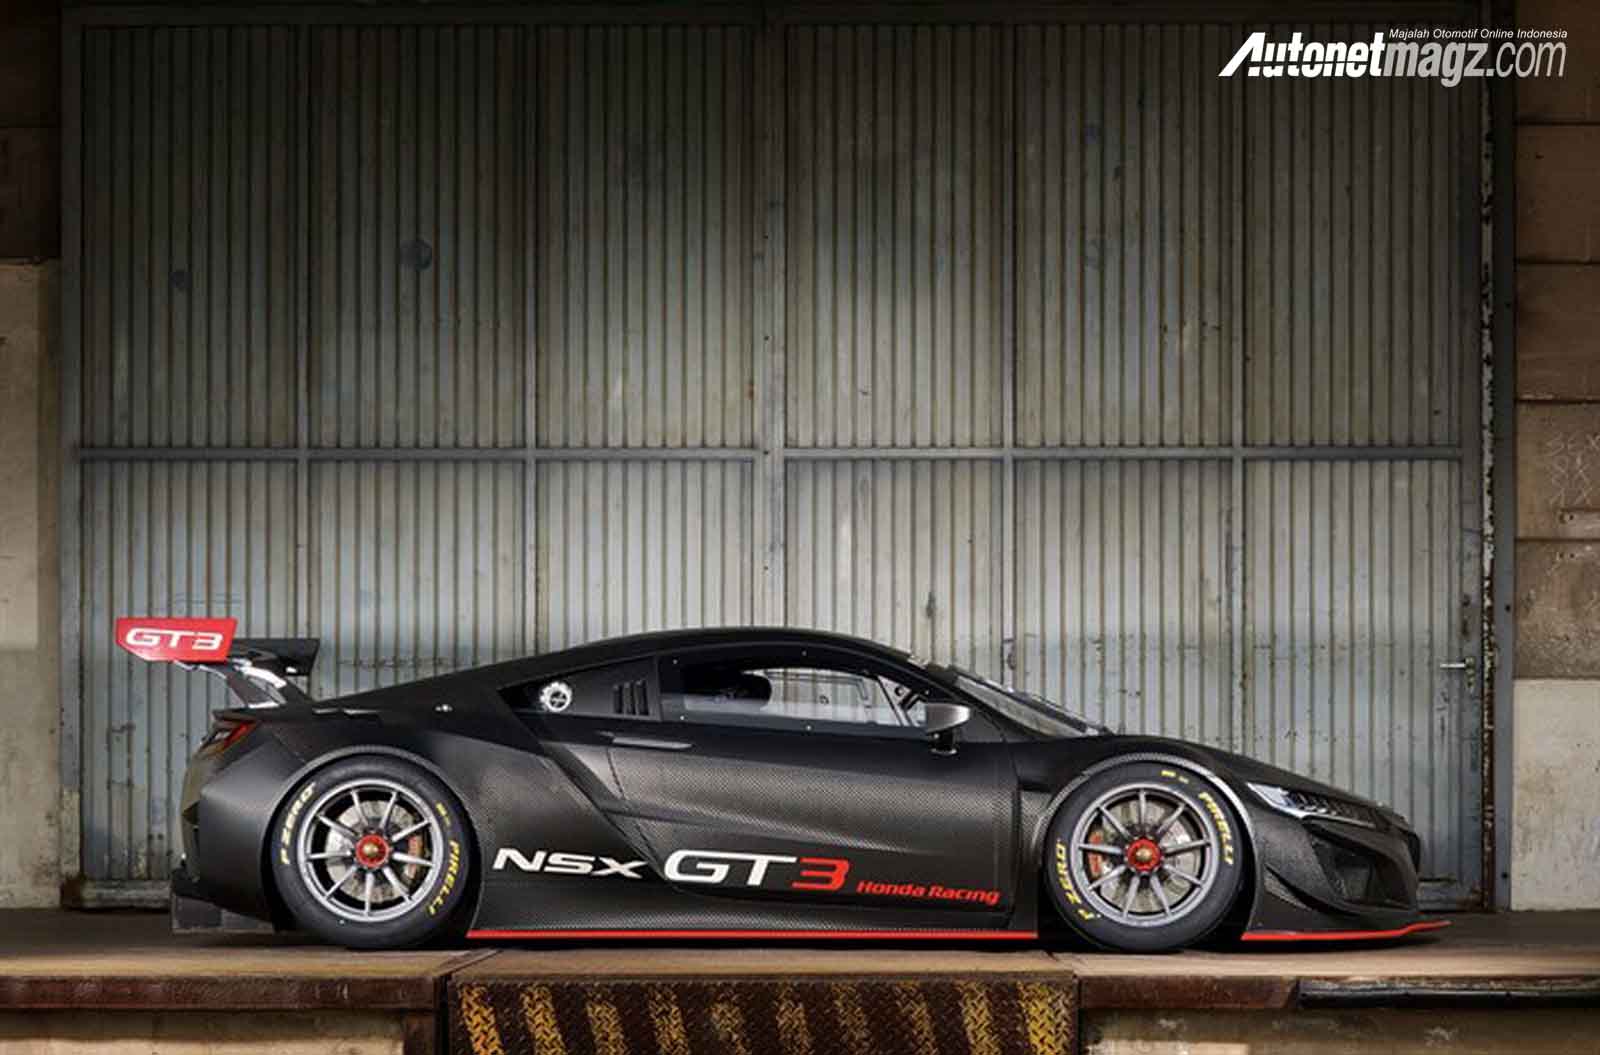 Berita, Honda NSX GT3 samping: Honda NSX GT3 Dijual 7,2 Miliar, Spesifikasi Balap Murni